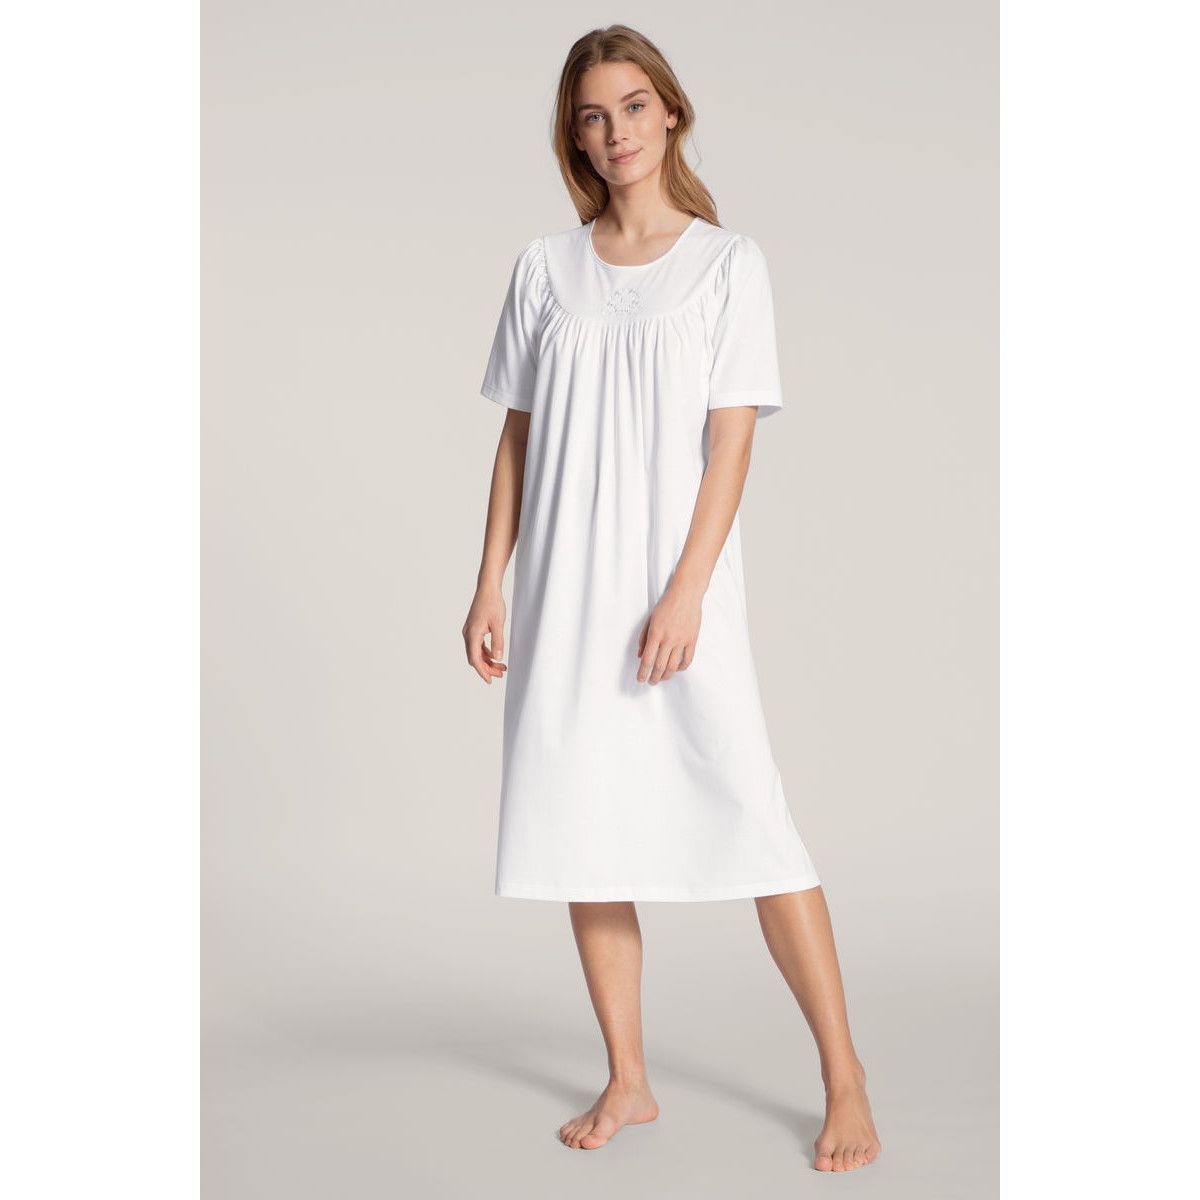 serie Goedaardig deed het Duurzaam wit Calida nachthemd korte mouw | Gratis verzending en retour |  Online de mooiste pyjama's, nachthemden, ondermode en meer